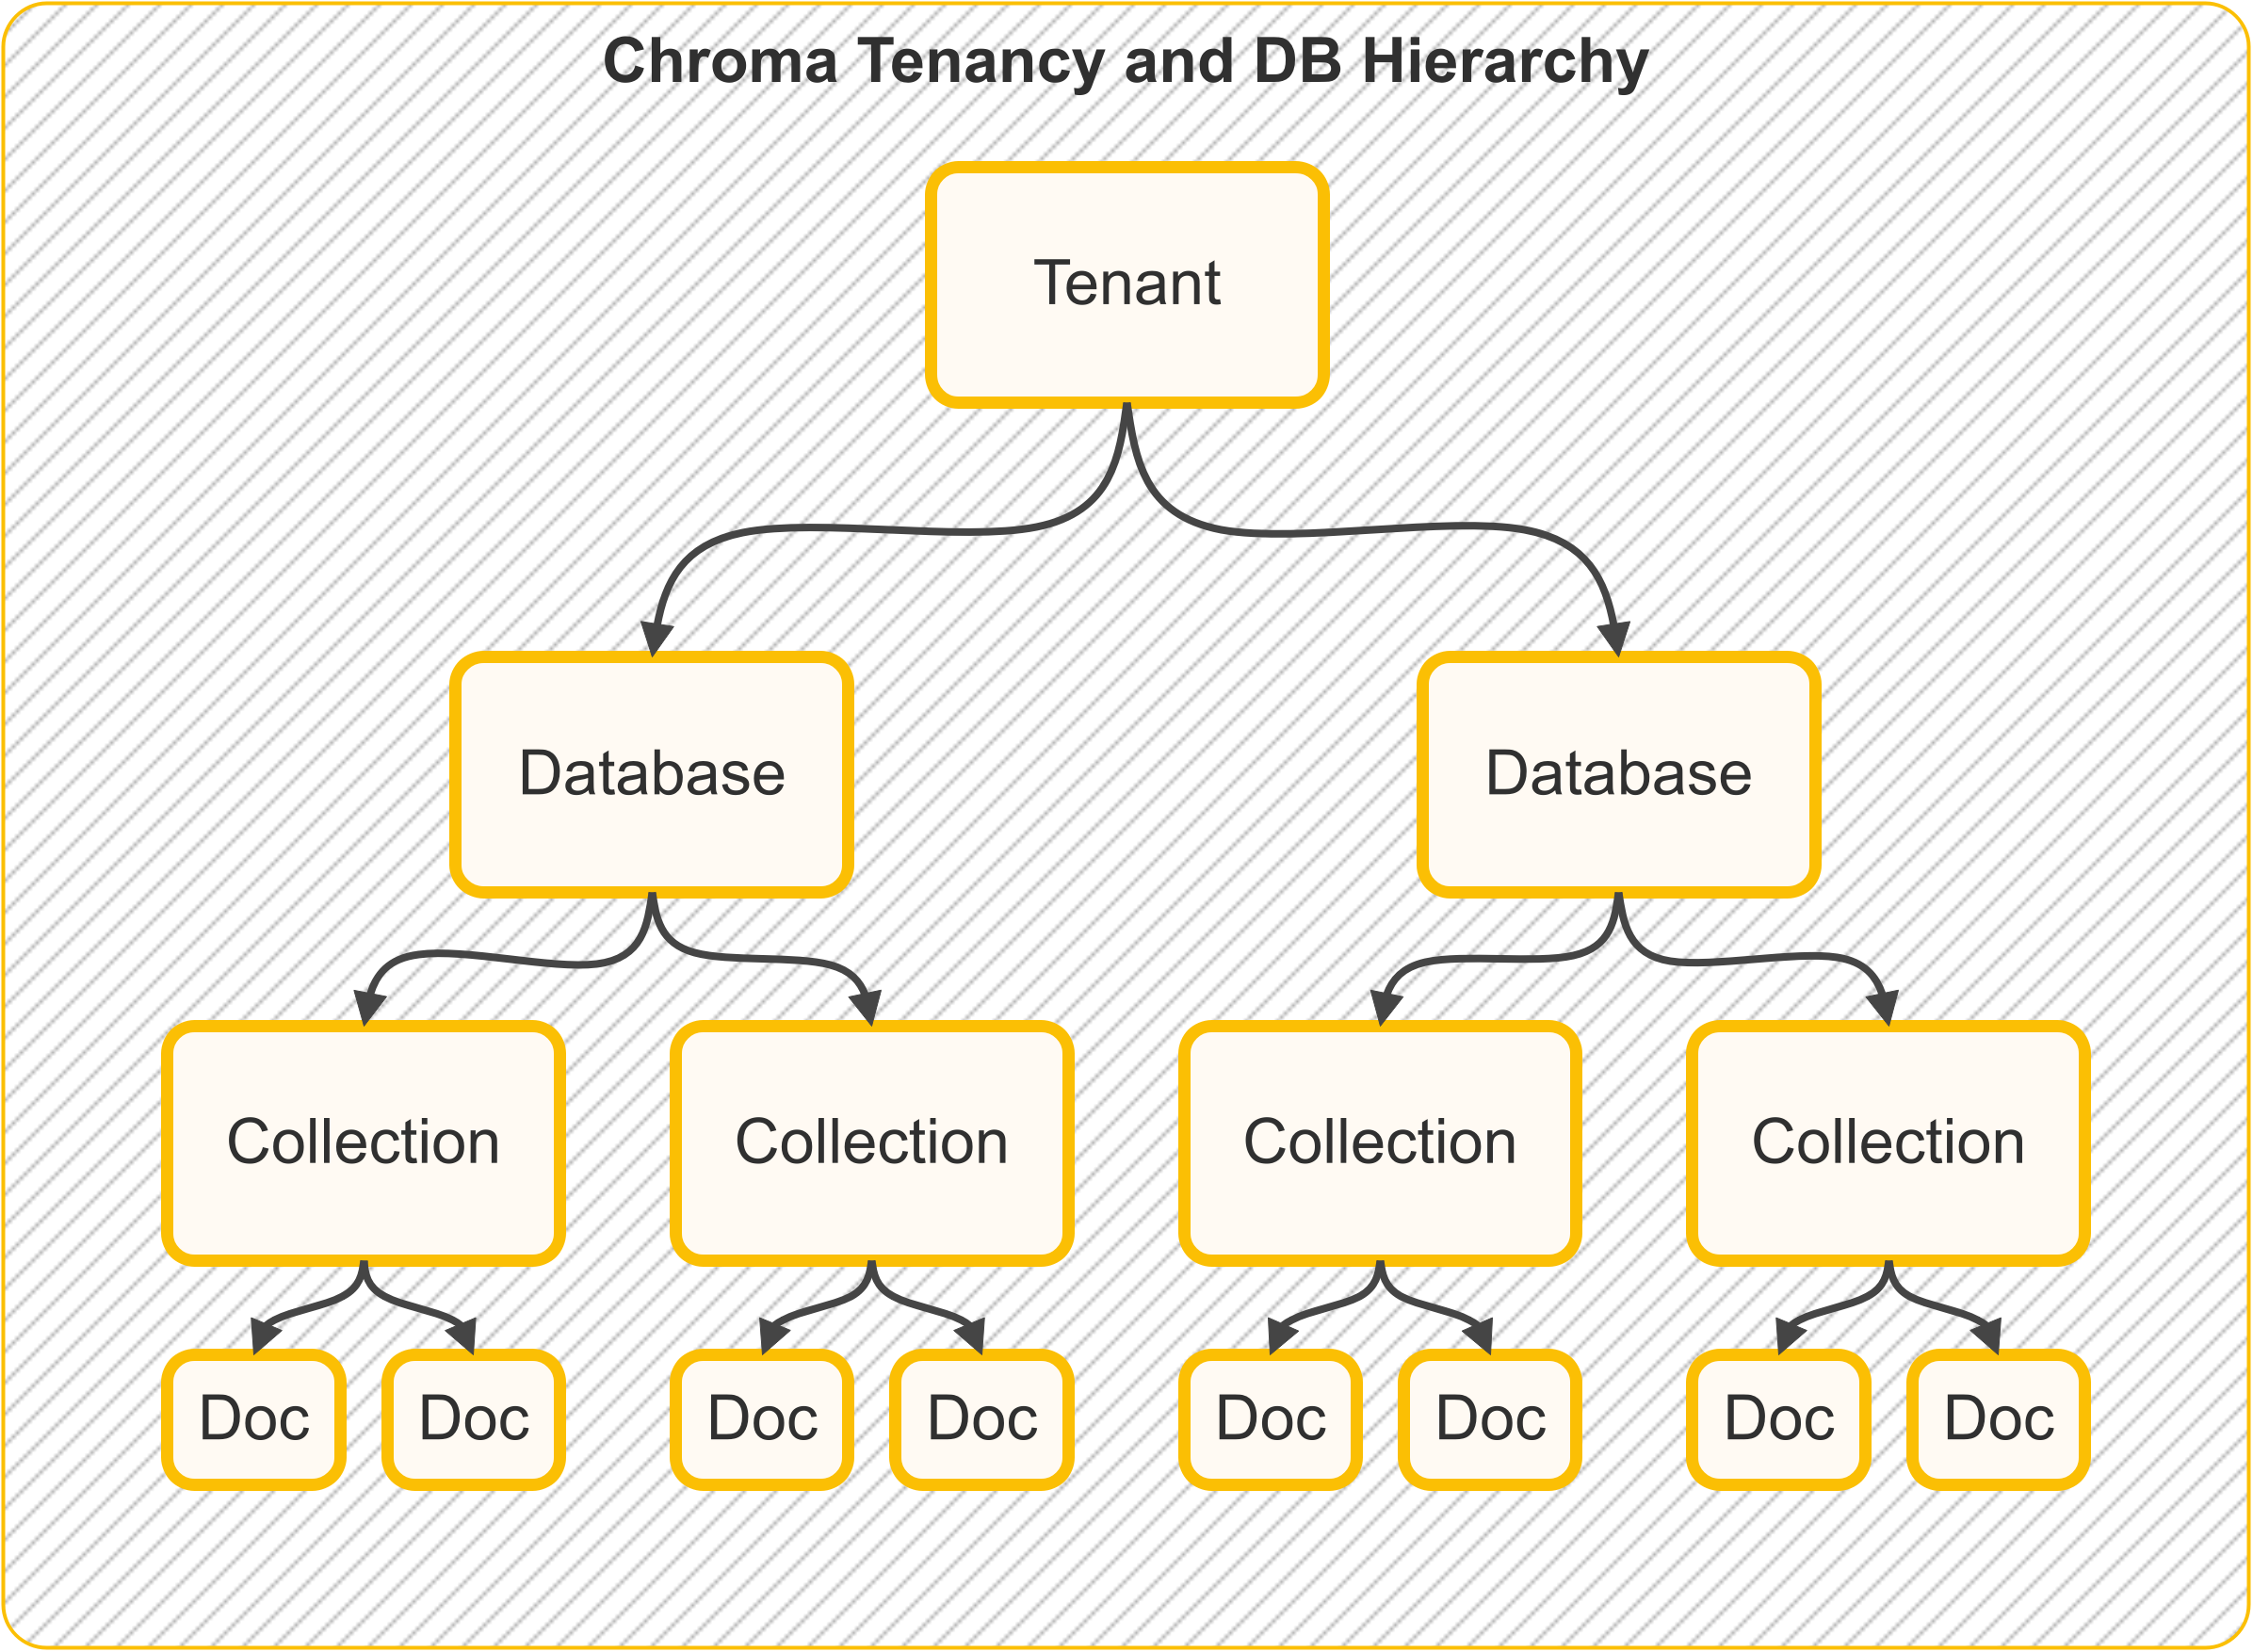 Tenancy and DB Hierarchy